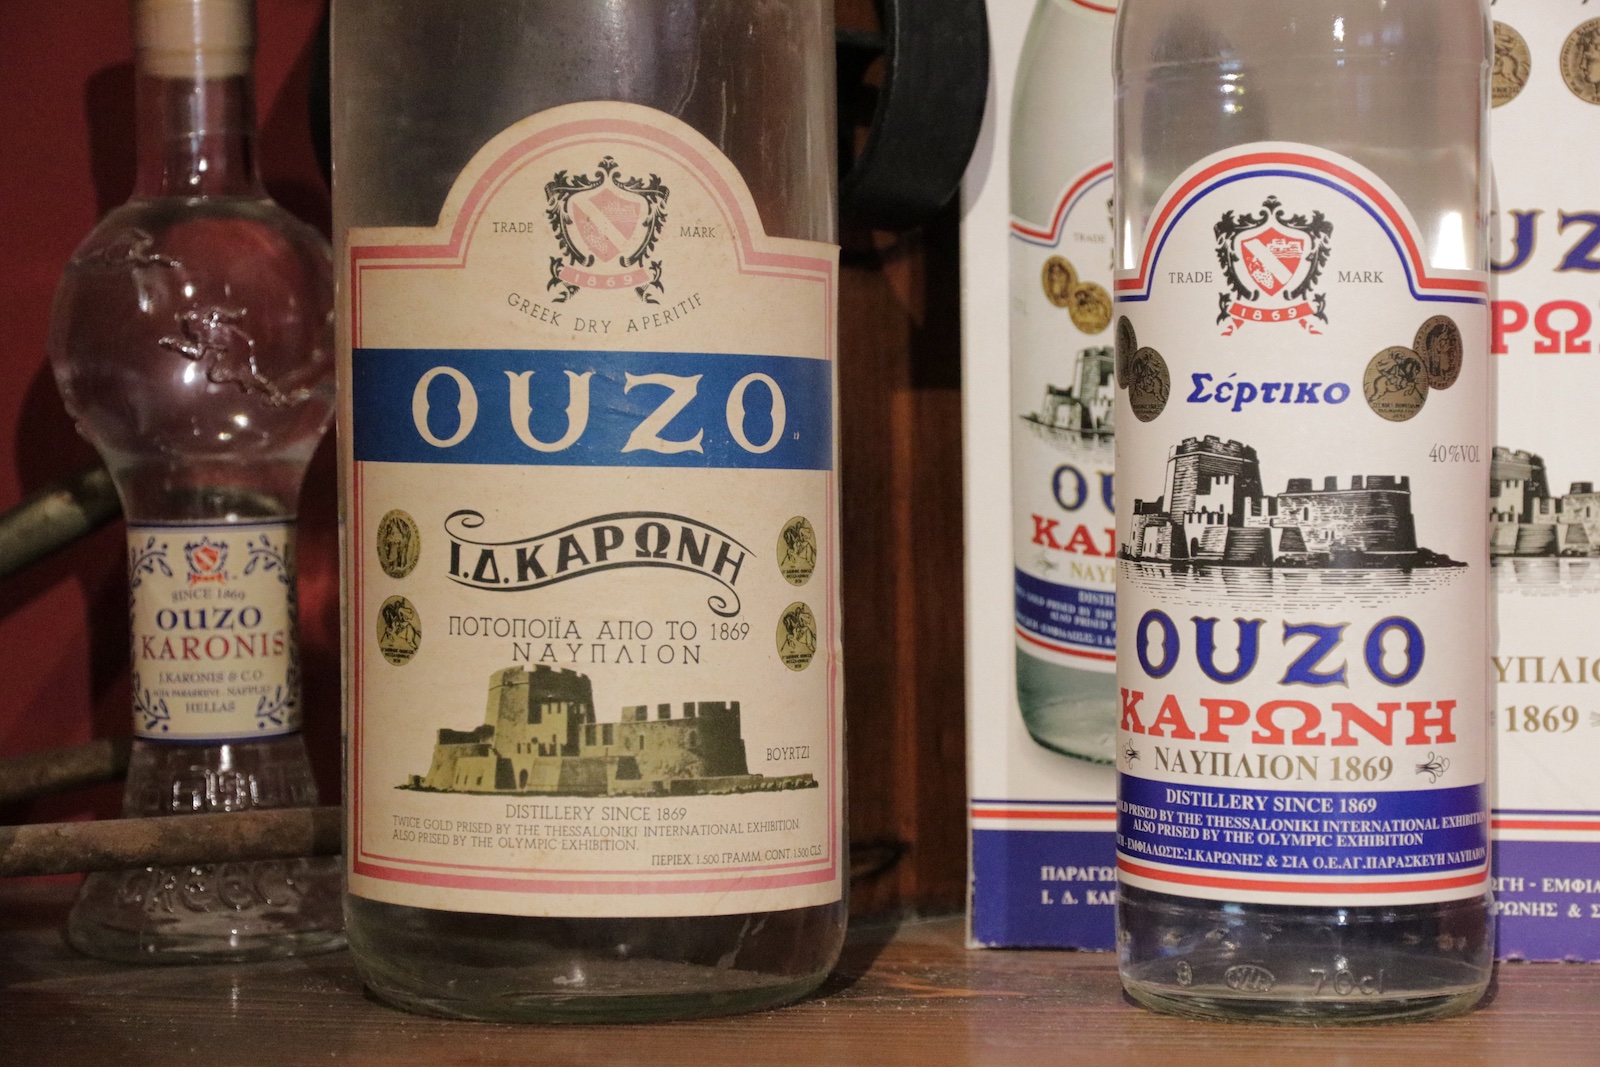 Oude flessen Ouzo in het kleine museum van Karonis distilleries